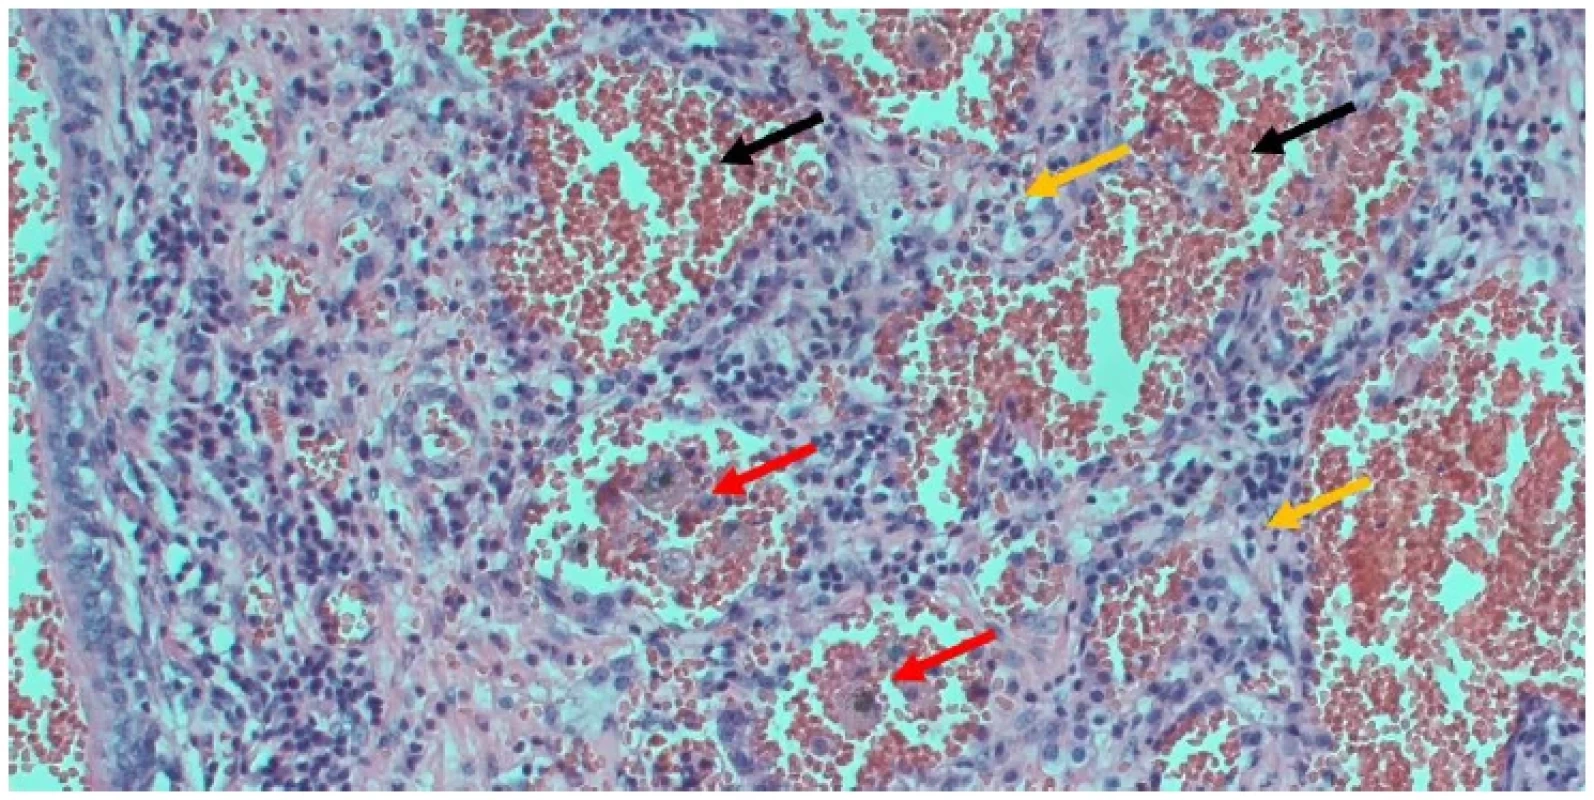 Pohľad na časť pľúc s nálezom hemoragicko hnisavého zápalu so zmnoženým pľúcnym interstíciom (žlté šípky),
s masami kompaktných erytrocytov v lúmene alveolov (čierne šípky) a početnými skupinkami aktinomycét (červené šípky) <br> 
Fig. 3. A view of part of the lung showing hemorrhagic hissing inflammation with increased pulmonary interstitium (yellow
arrows), with masses of compact erythrocytes in the lumen of the alveoli (black arrows) and numerous groups of actinomycetes
(red arrows)